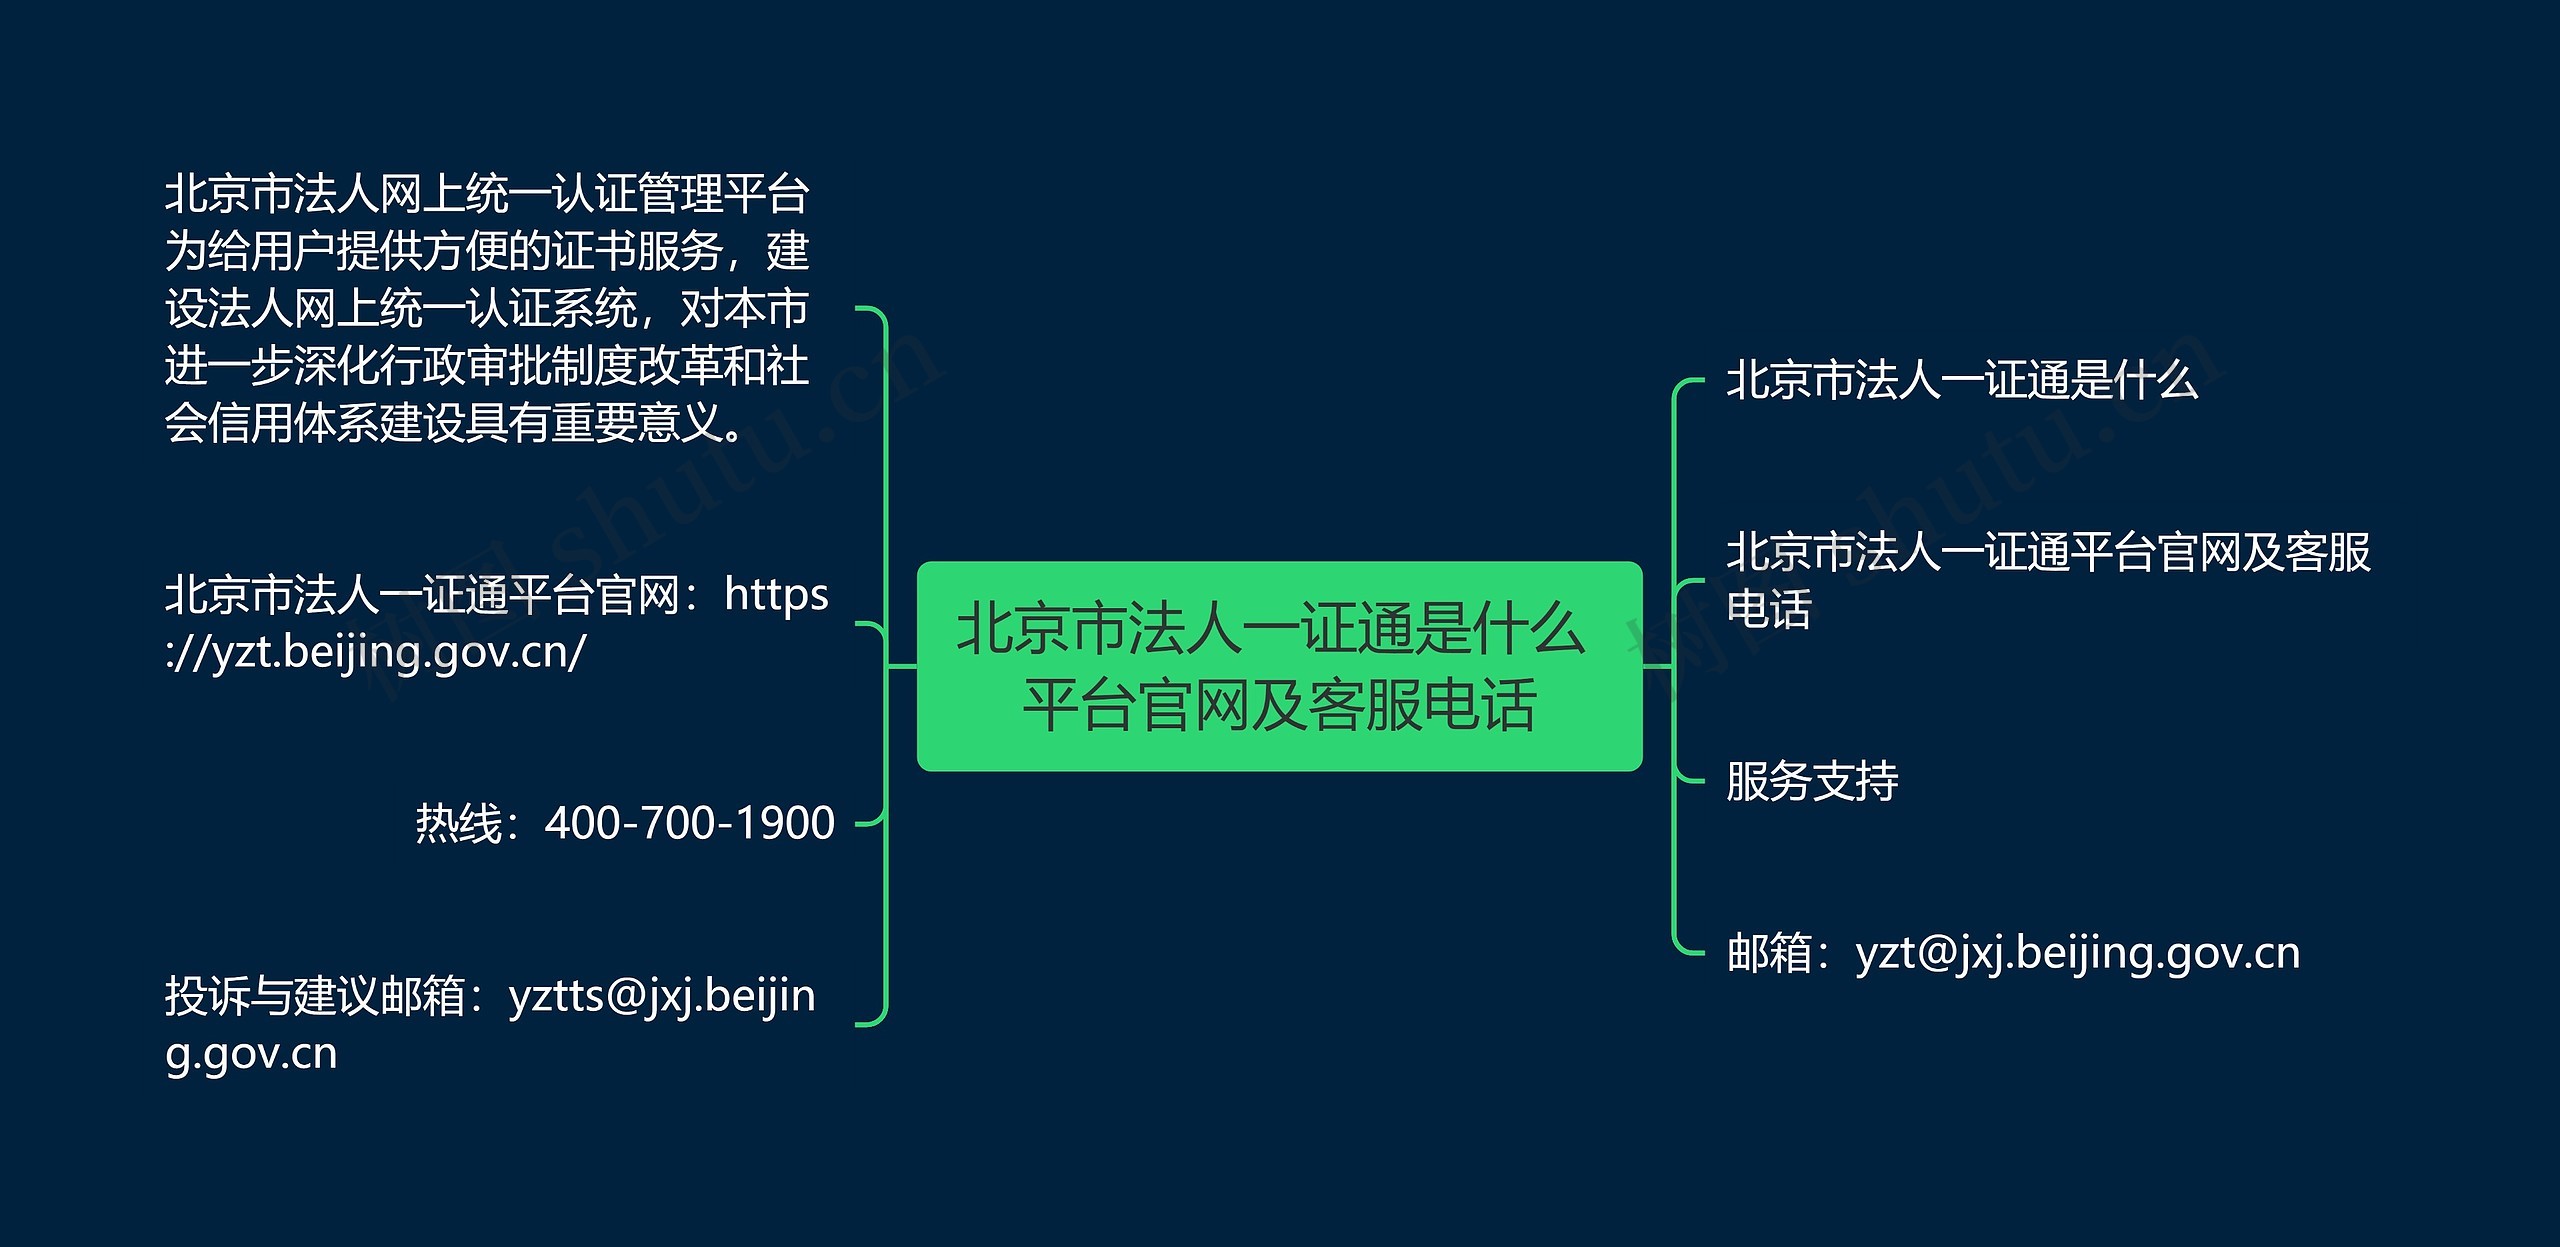 北京市法人一证通是什么 平台官网及客服电话思维导图